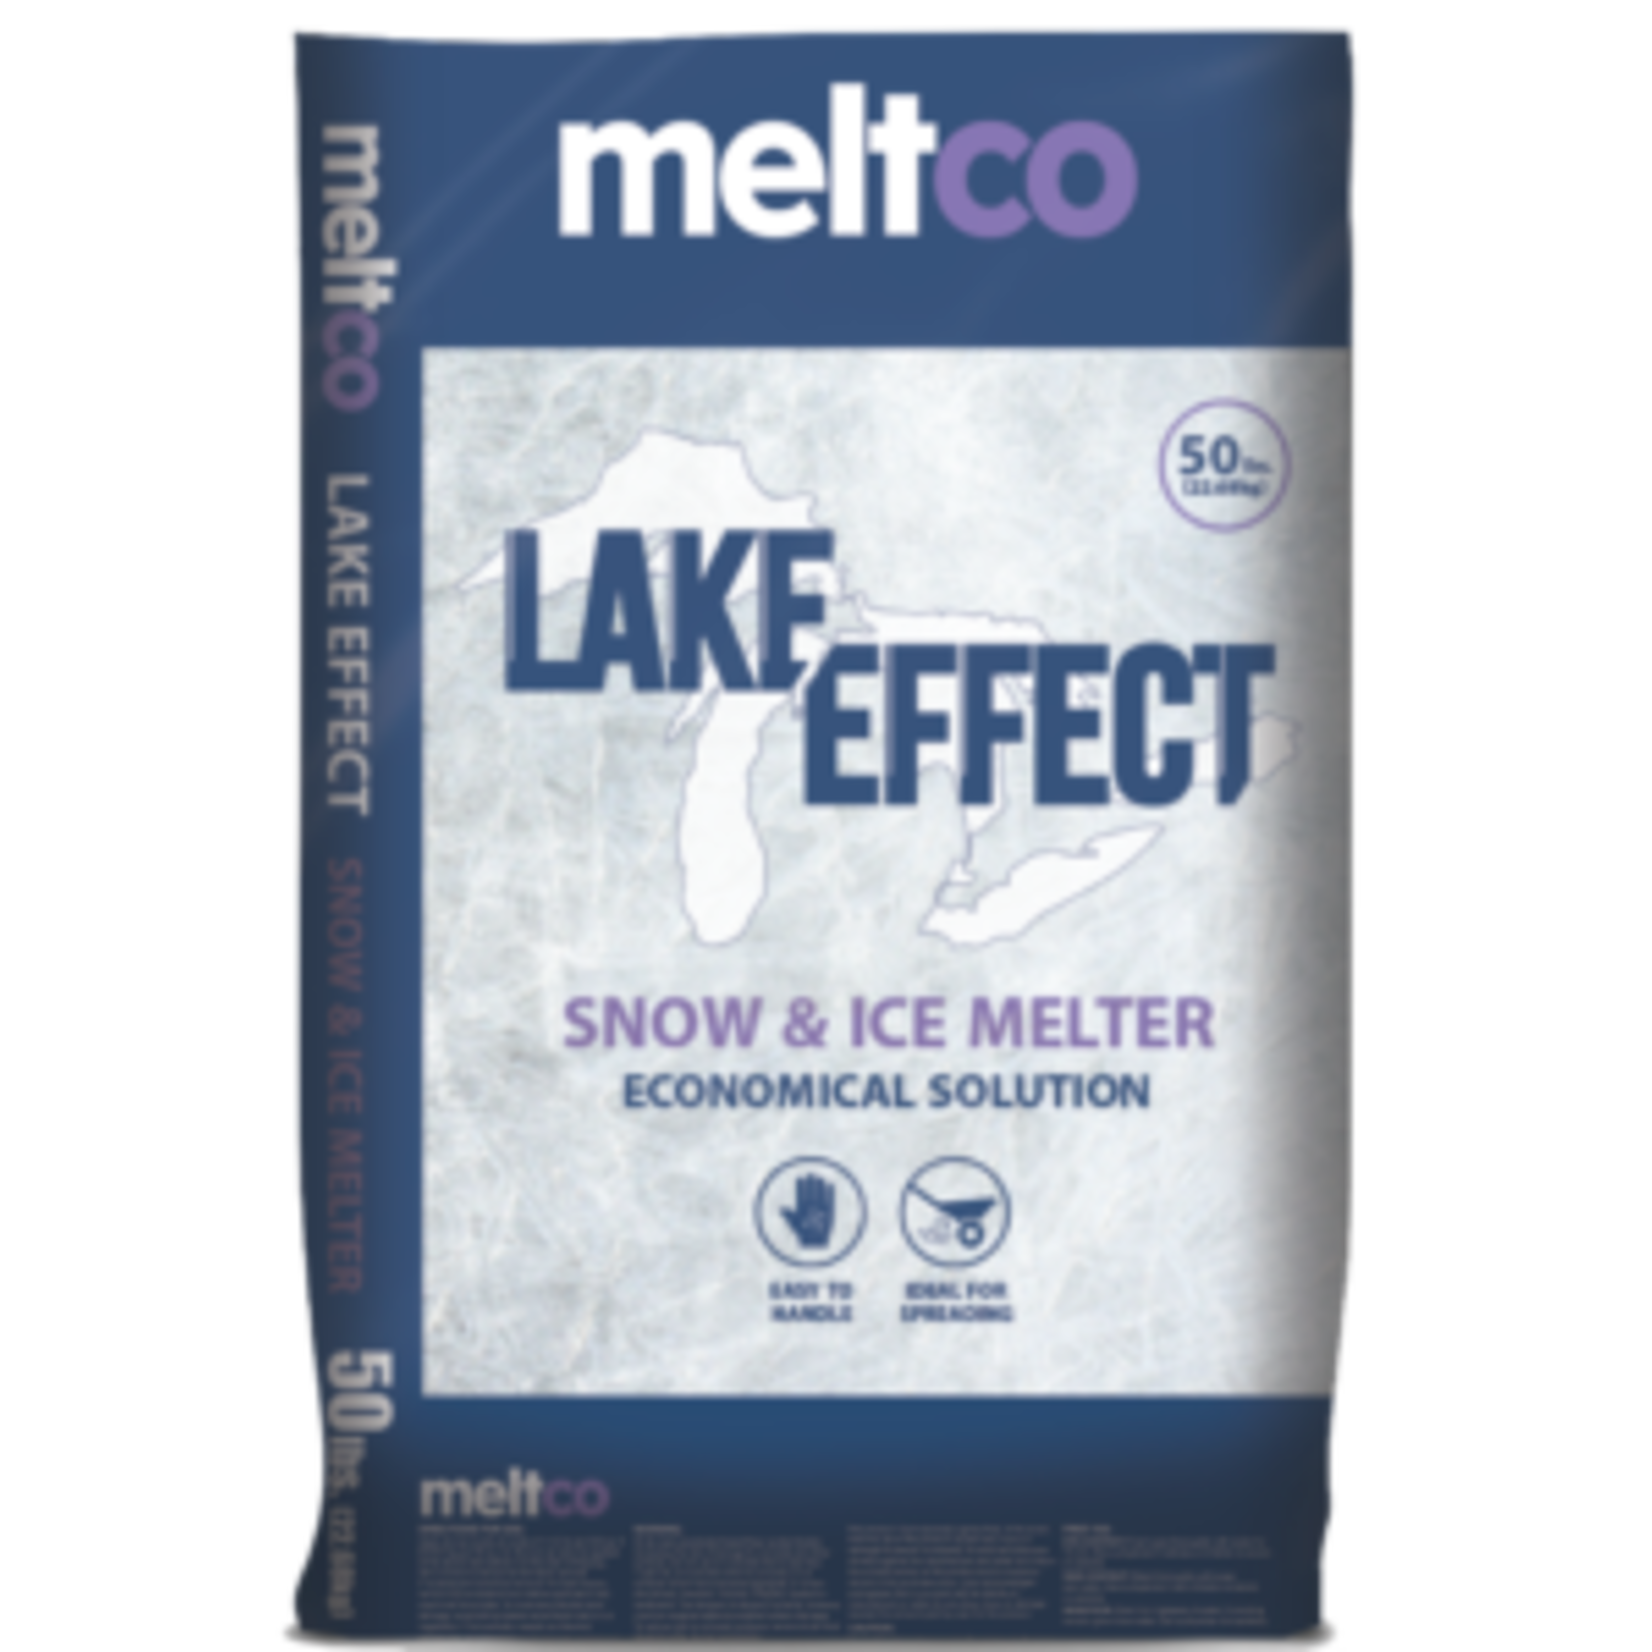 Meltco Pallet (49, 50# Bags). Meltco Lake Effect Rock Salt